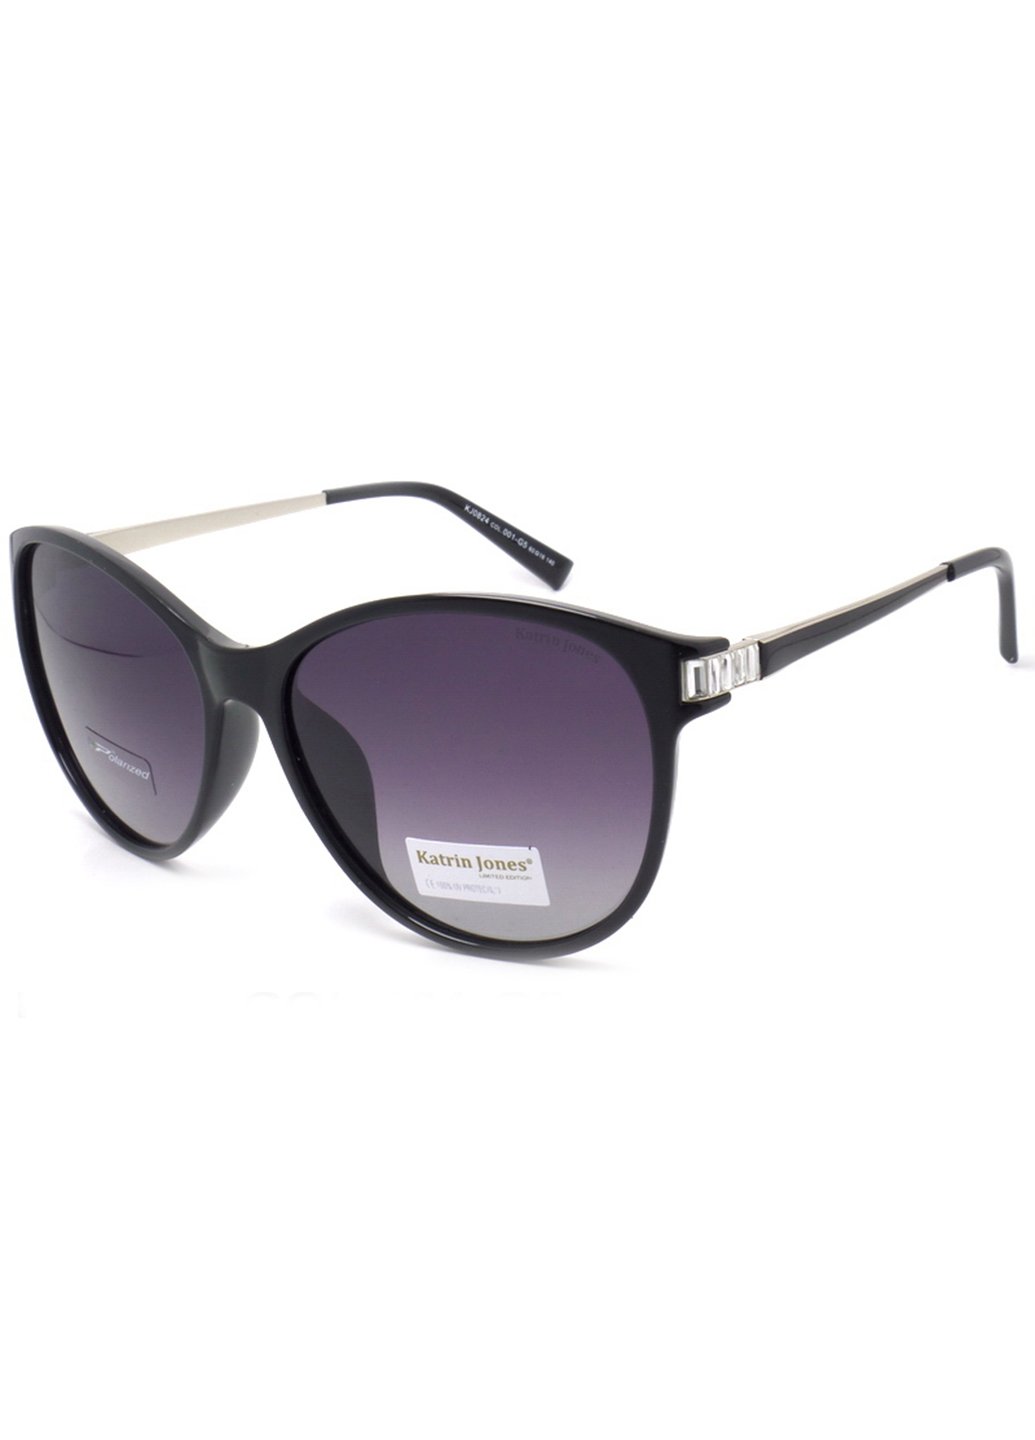 Купить Женские солнцезащитные очки Katrin Jones с поляризацией KJ0824 180032 - Черный в интернет-магазине